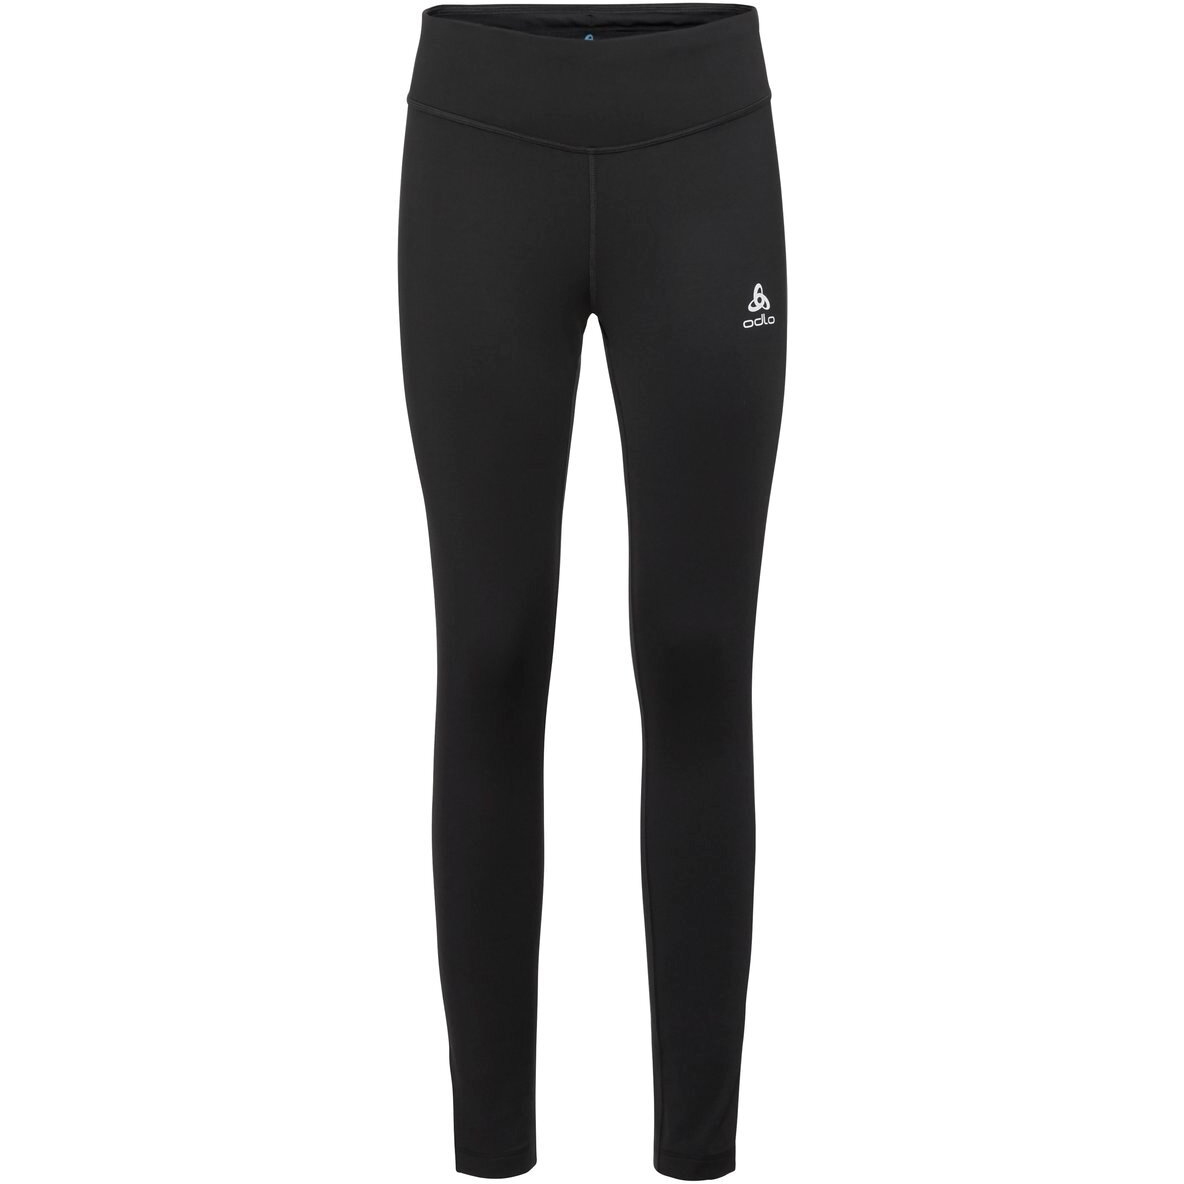 Produktbild von Odlo Damen Essentials Warm Lauf- und Trainings-Tights - schwarz